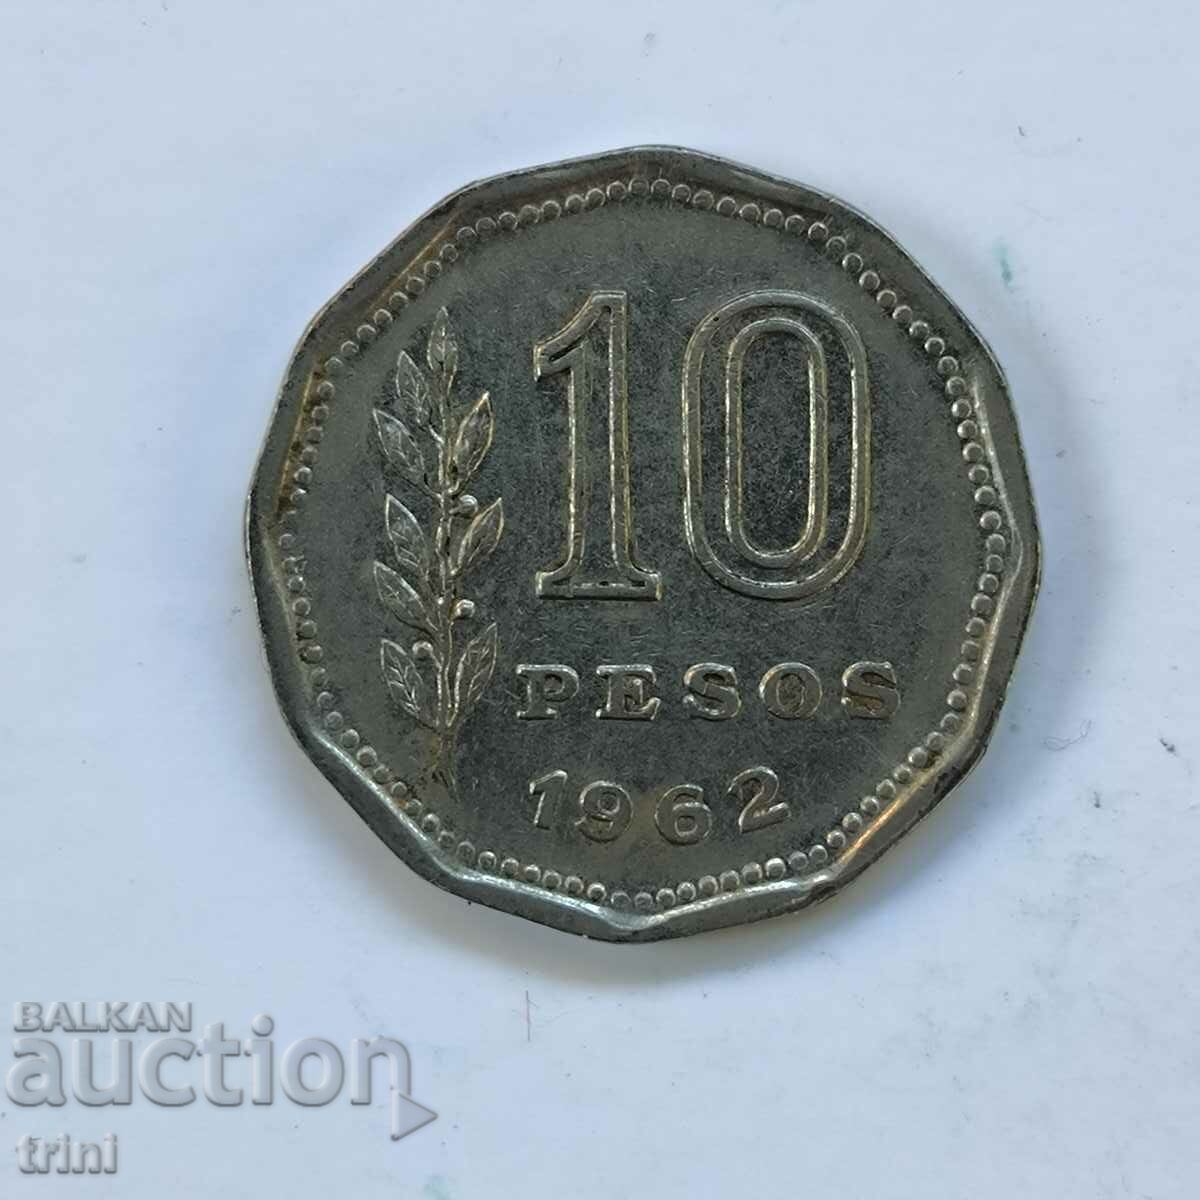 Argentina 10 pesos 1962